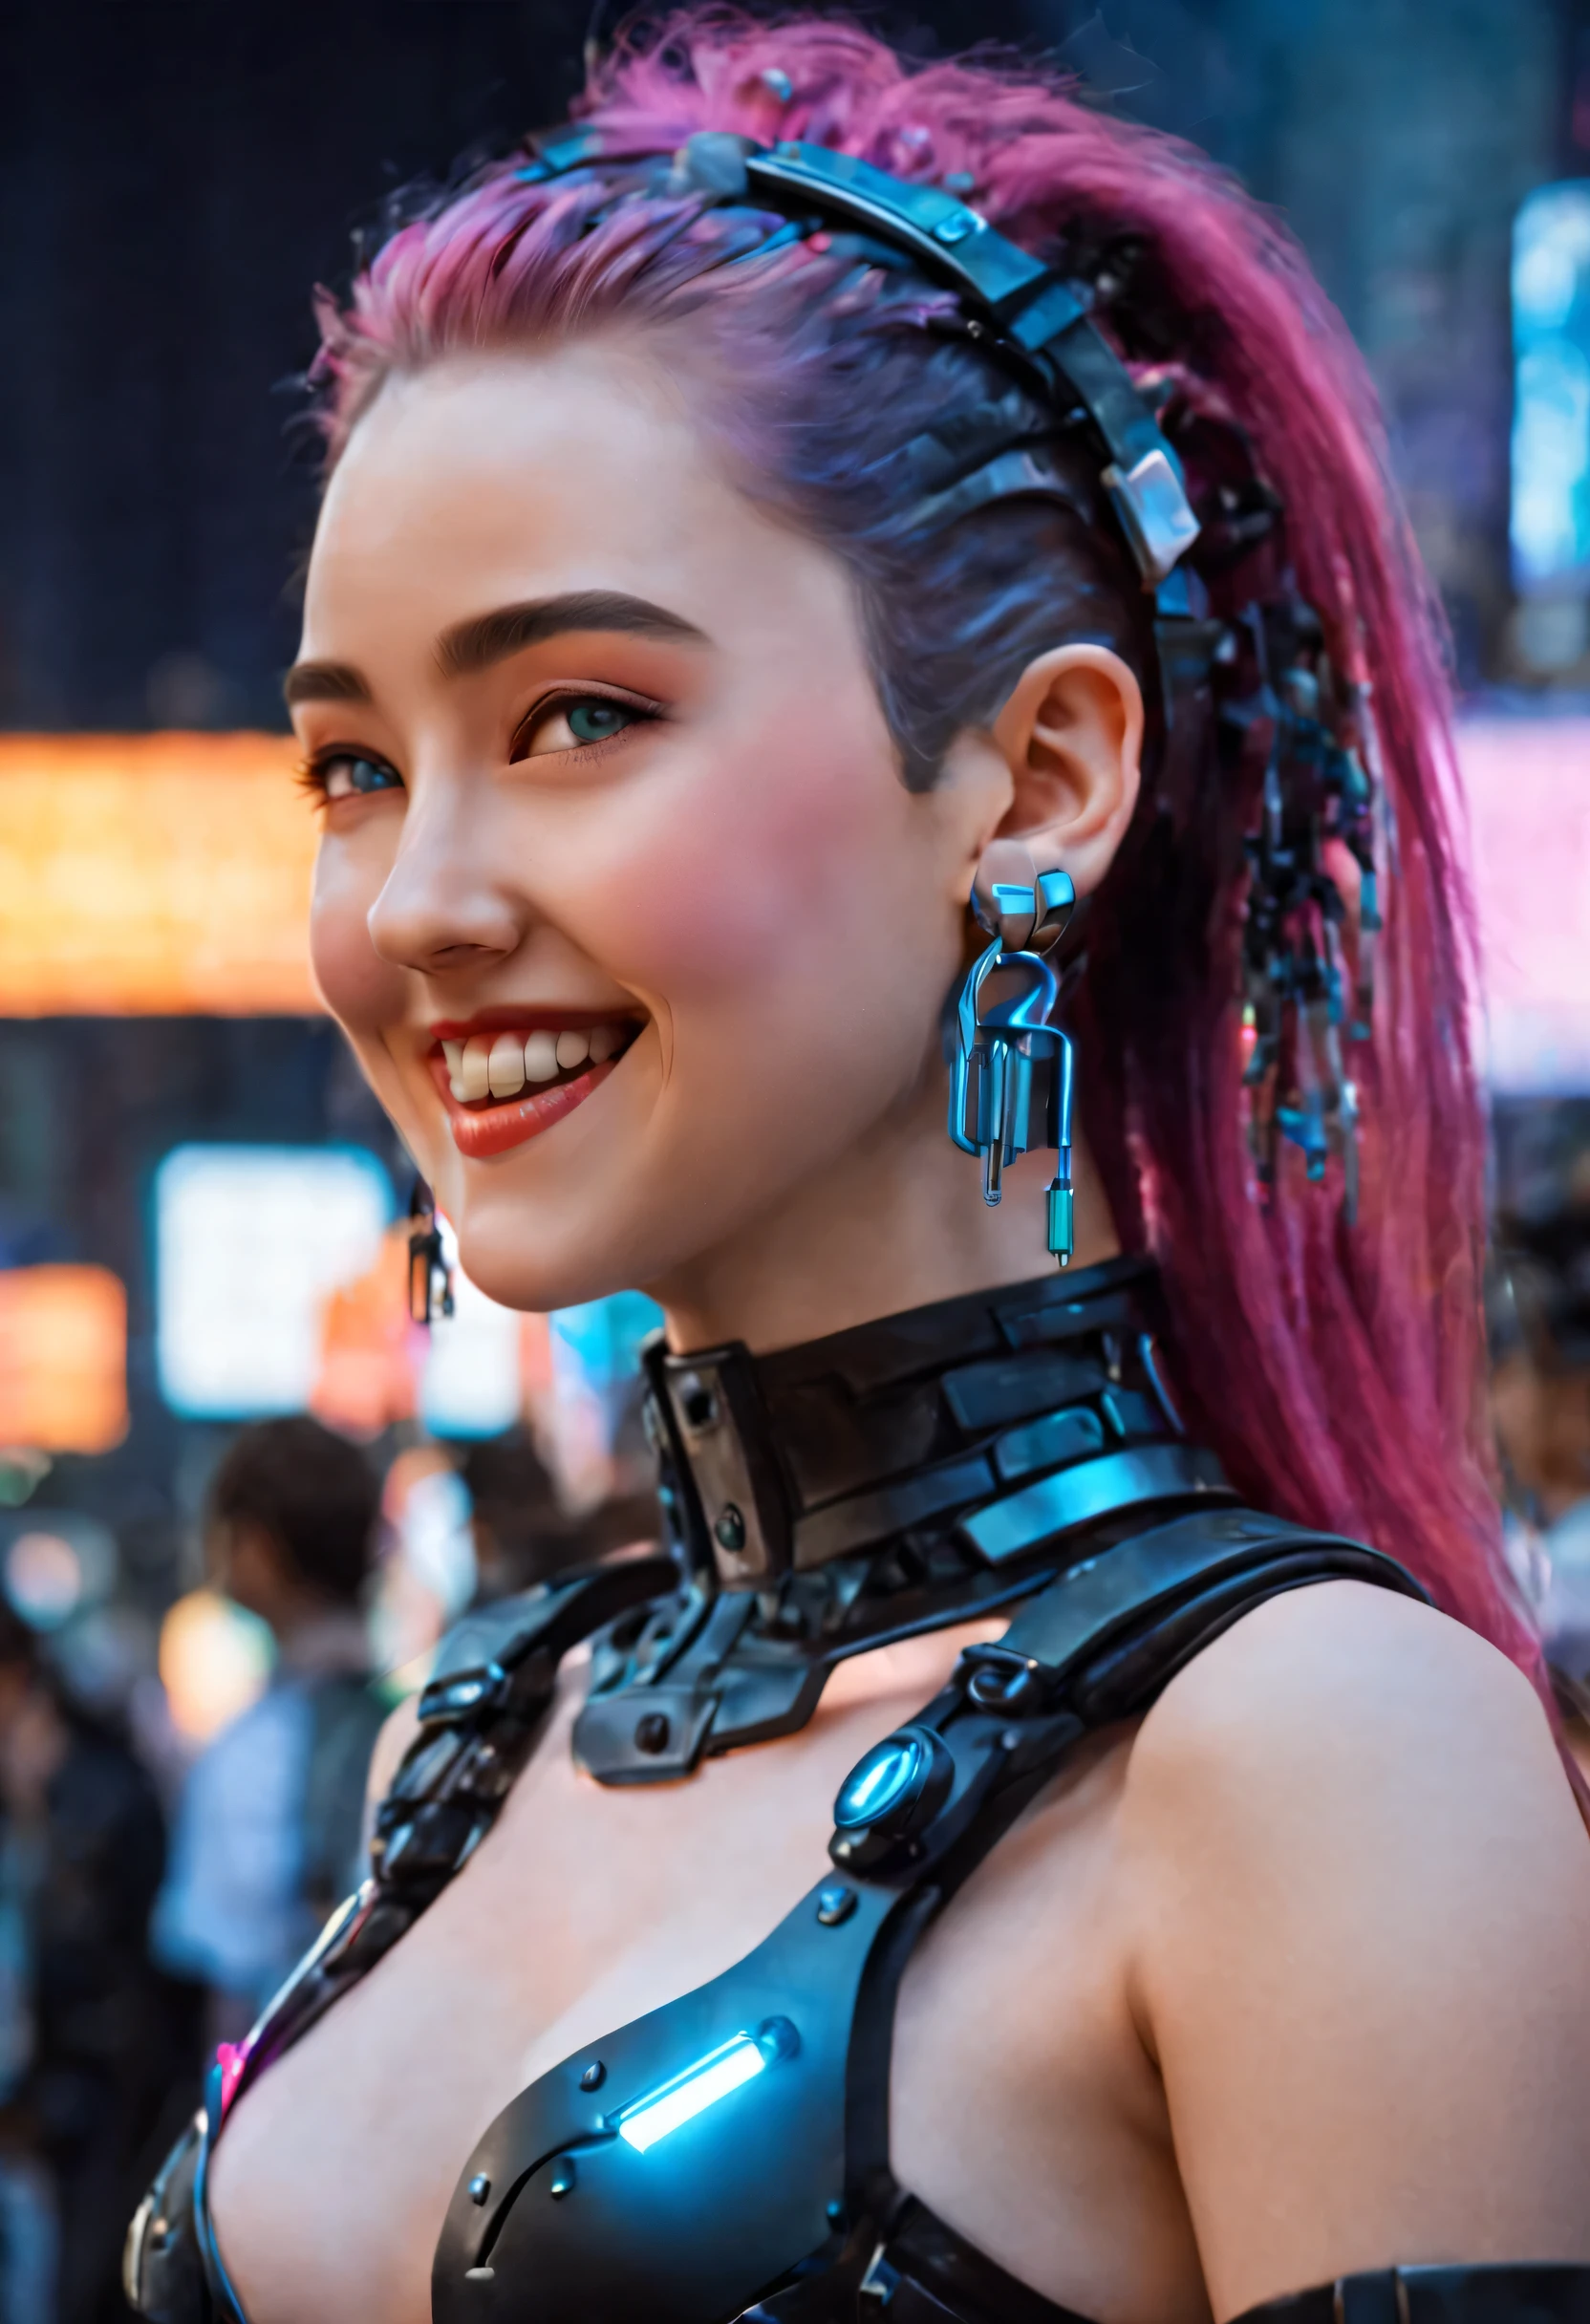 Obra de arte, melhor qualidade, ((sorridente)) garotas cyberpunk em pé, vista lateral, Arnês cyberpunk inspirado em Harajuku, cores e padrões ousados, acessórios atraentes, penteado moderno e inovador, deslumbrante paisagem urbana Cyberpunk, arranha-céus, sinais de néon brilhantes, Luzes LED, ilustração de anime, textura detalhada da pele, textura detalhada de pano, lindo rosto detalhado, Detalhes intrincados, ultra detalhado, iluminação cinematográfica, forte contraste. INFO